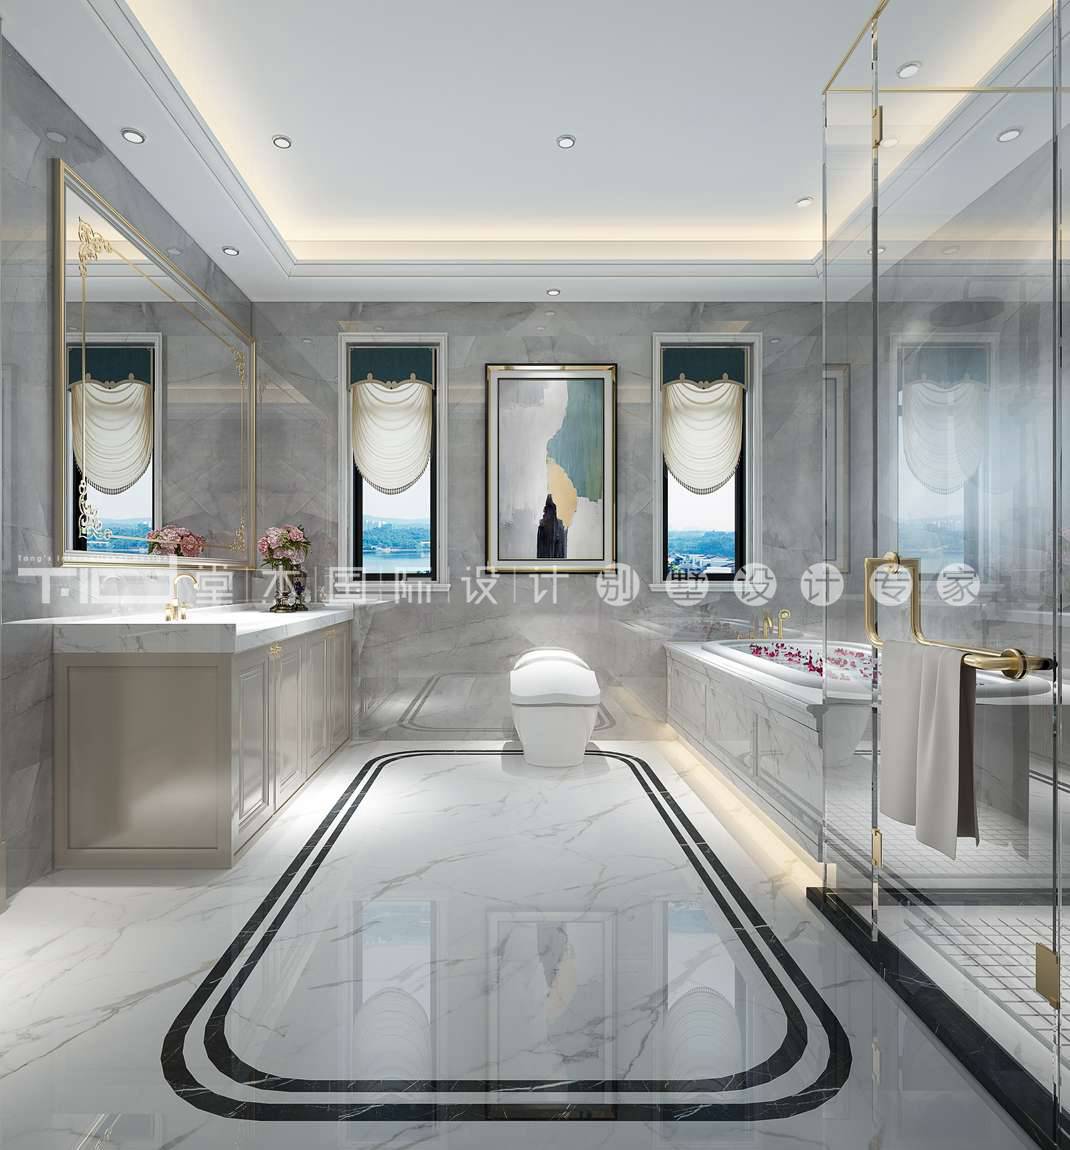 现代轻奢风格-印象剑桥-独栋别墅-500平-卫生间-装修效果图